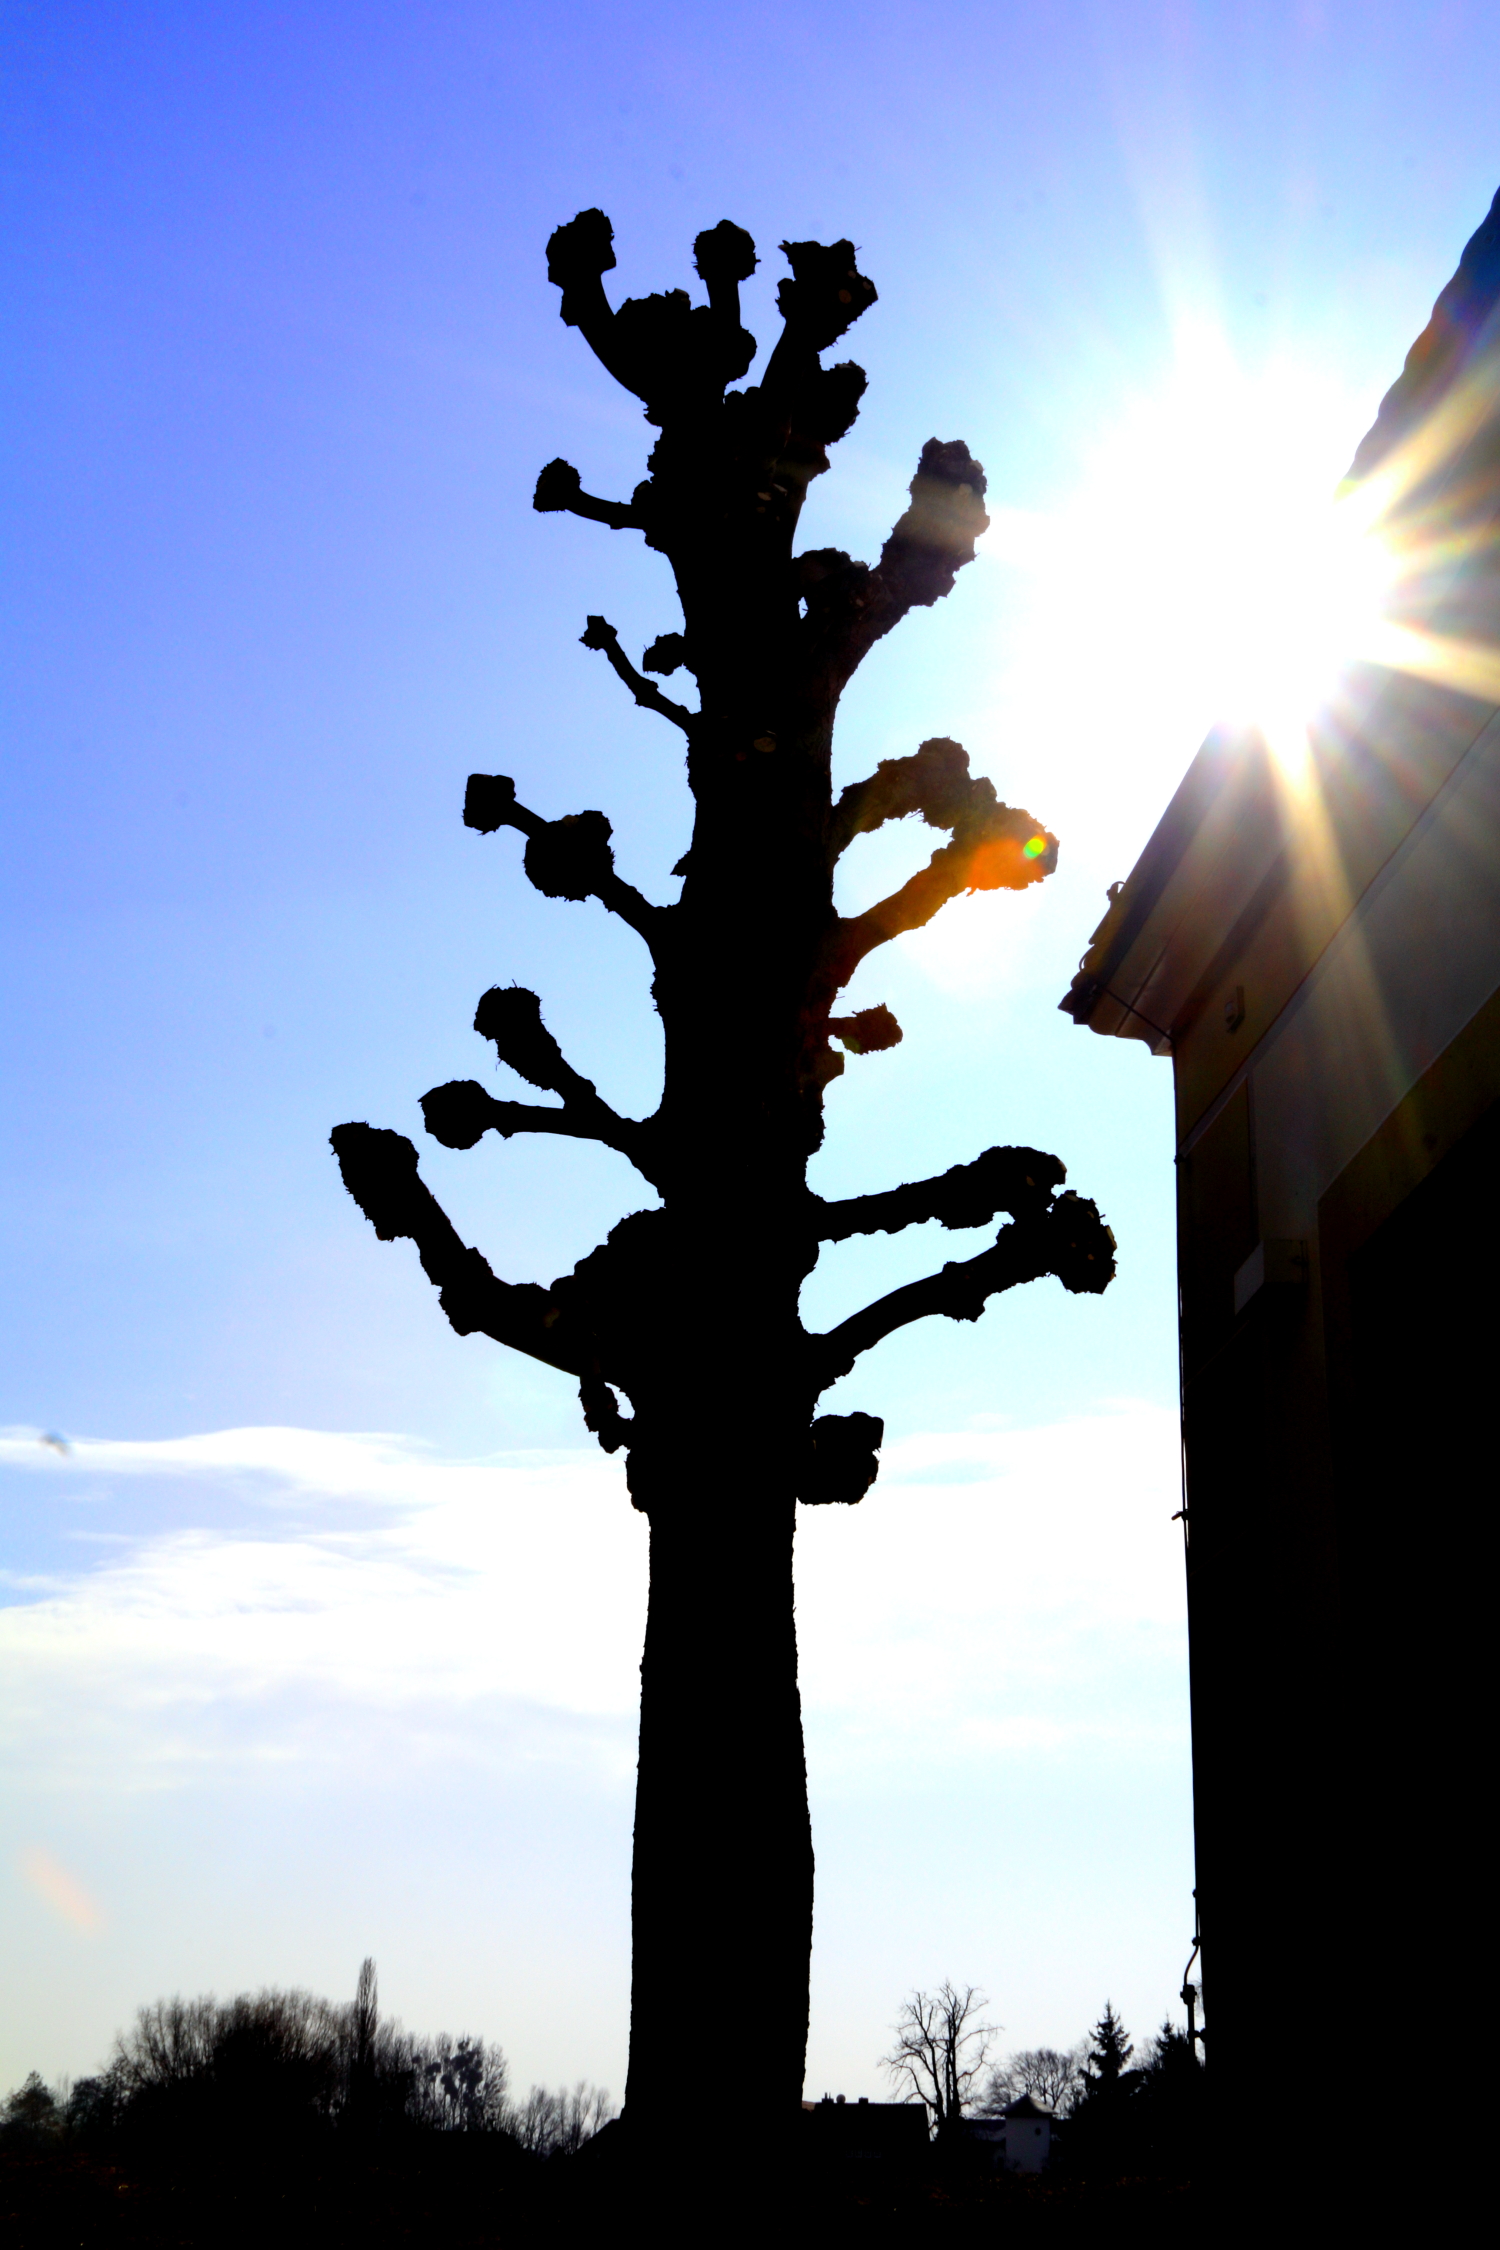 #SchlossMoritzburg #Baum #Sonne #blauerHimmel